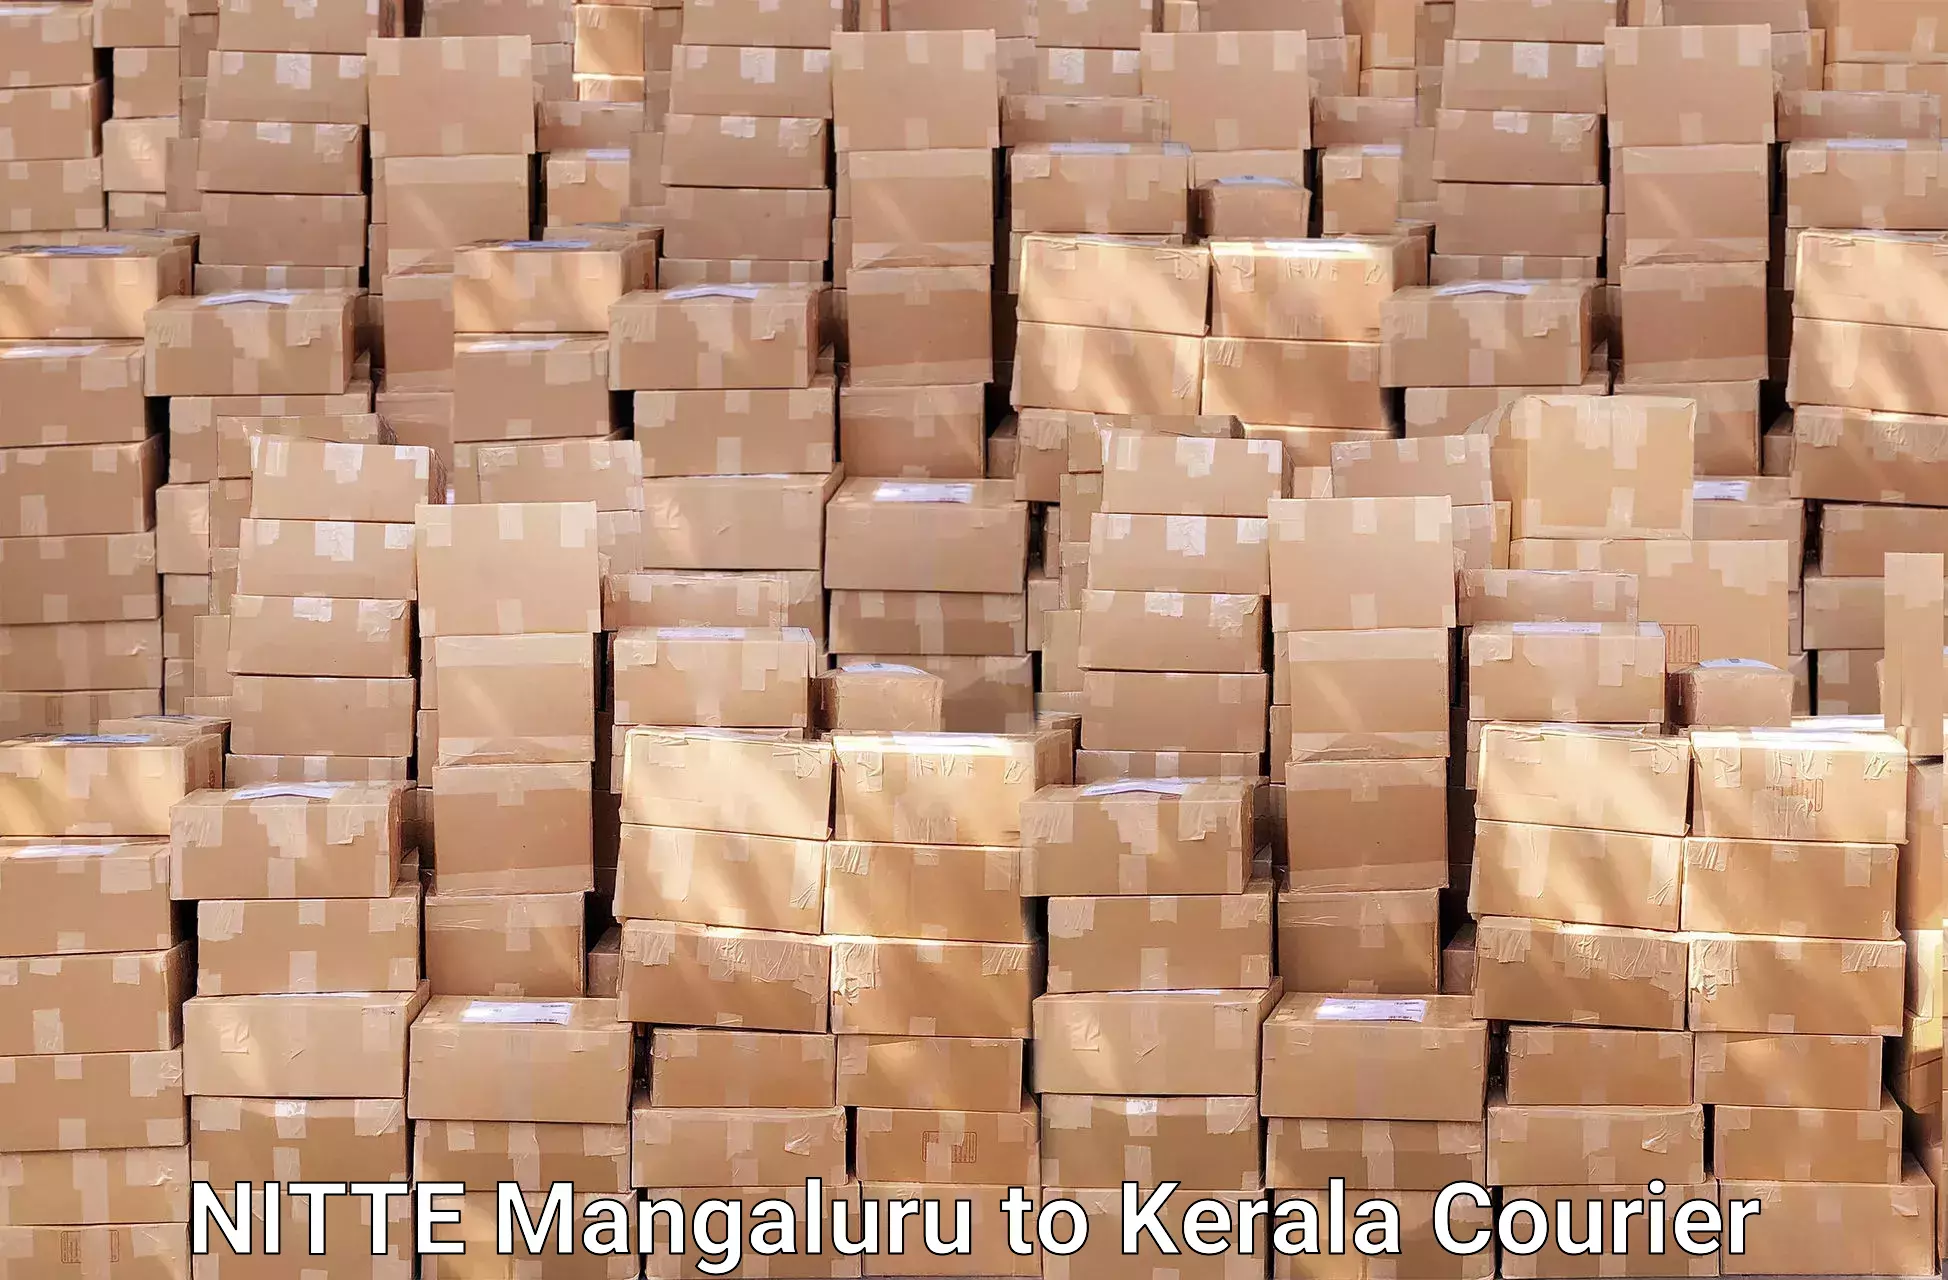 Specialized furniture movers NITTE Mangaluru to Calicut